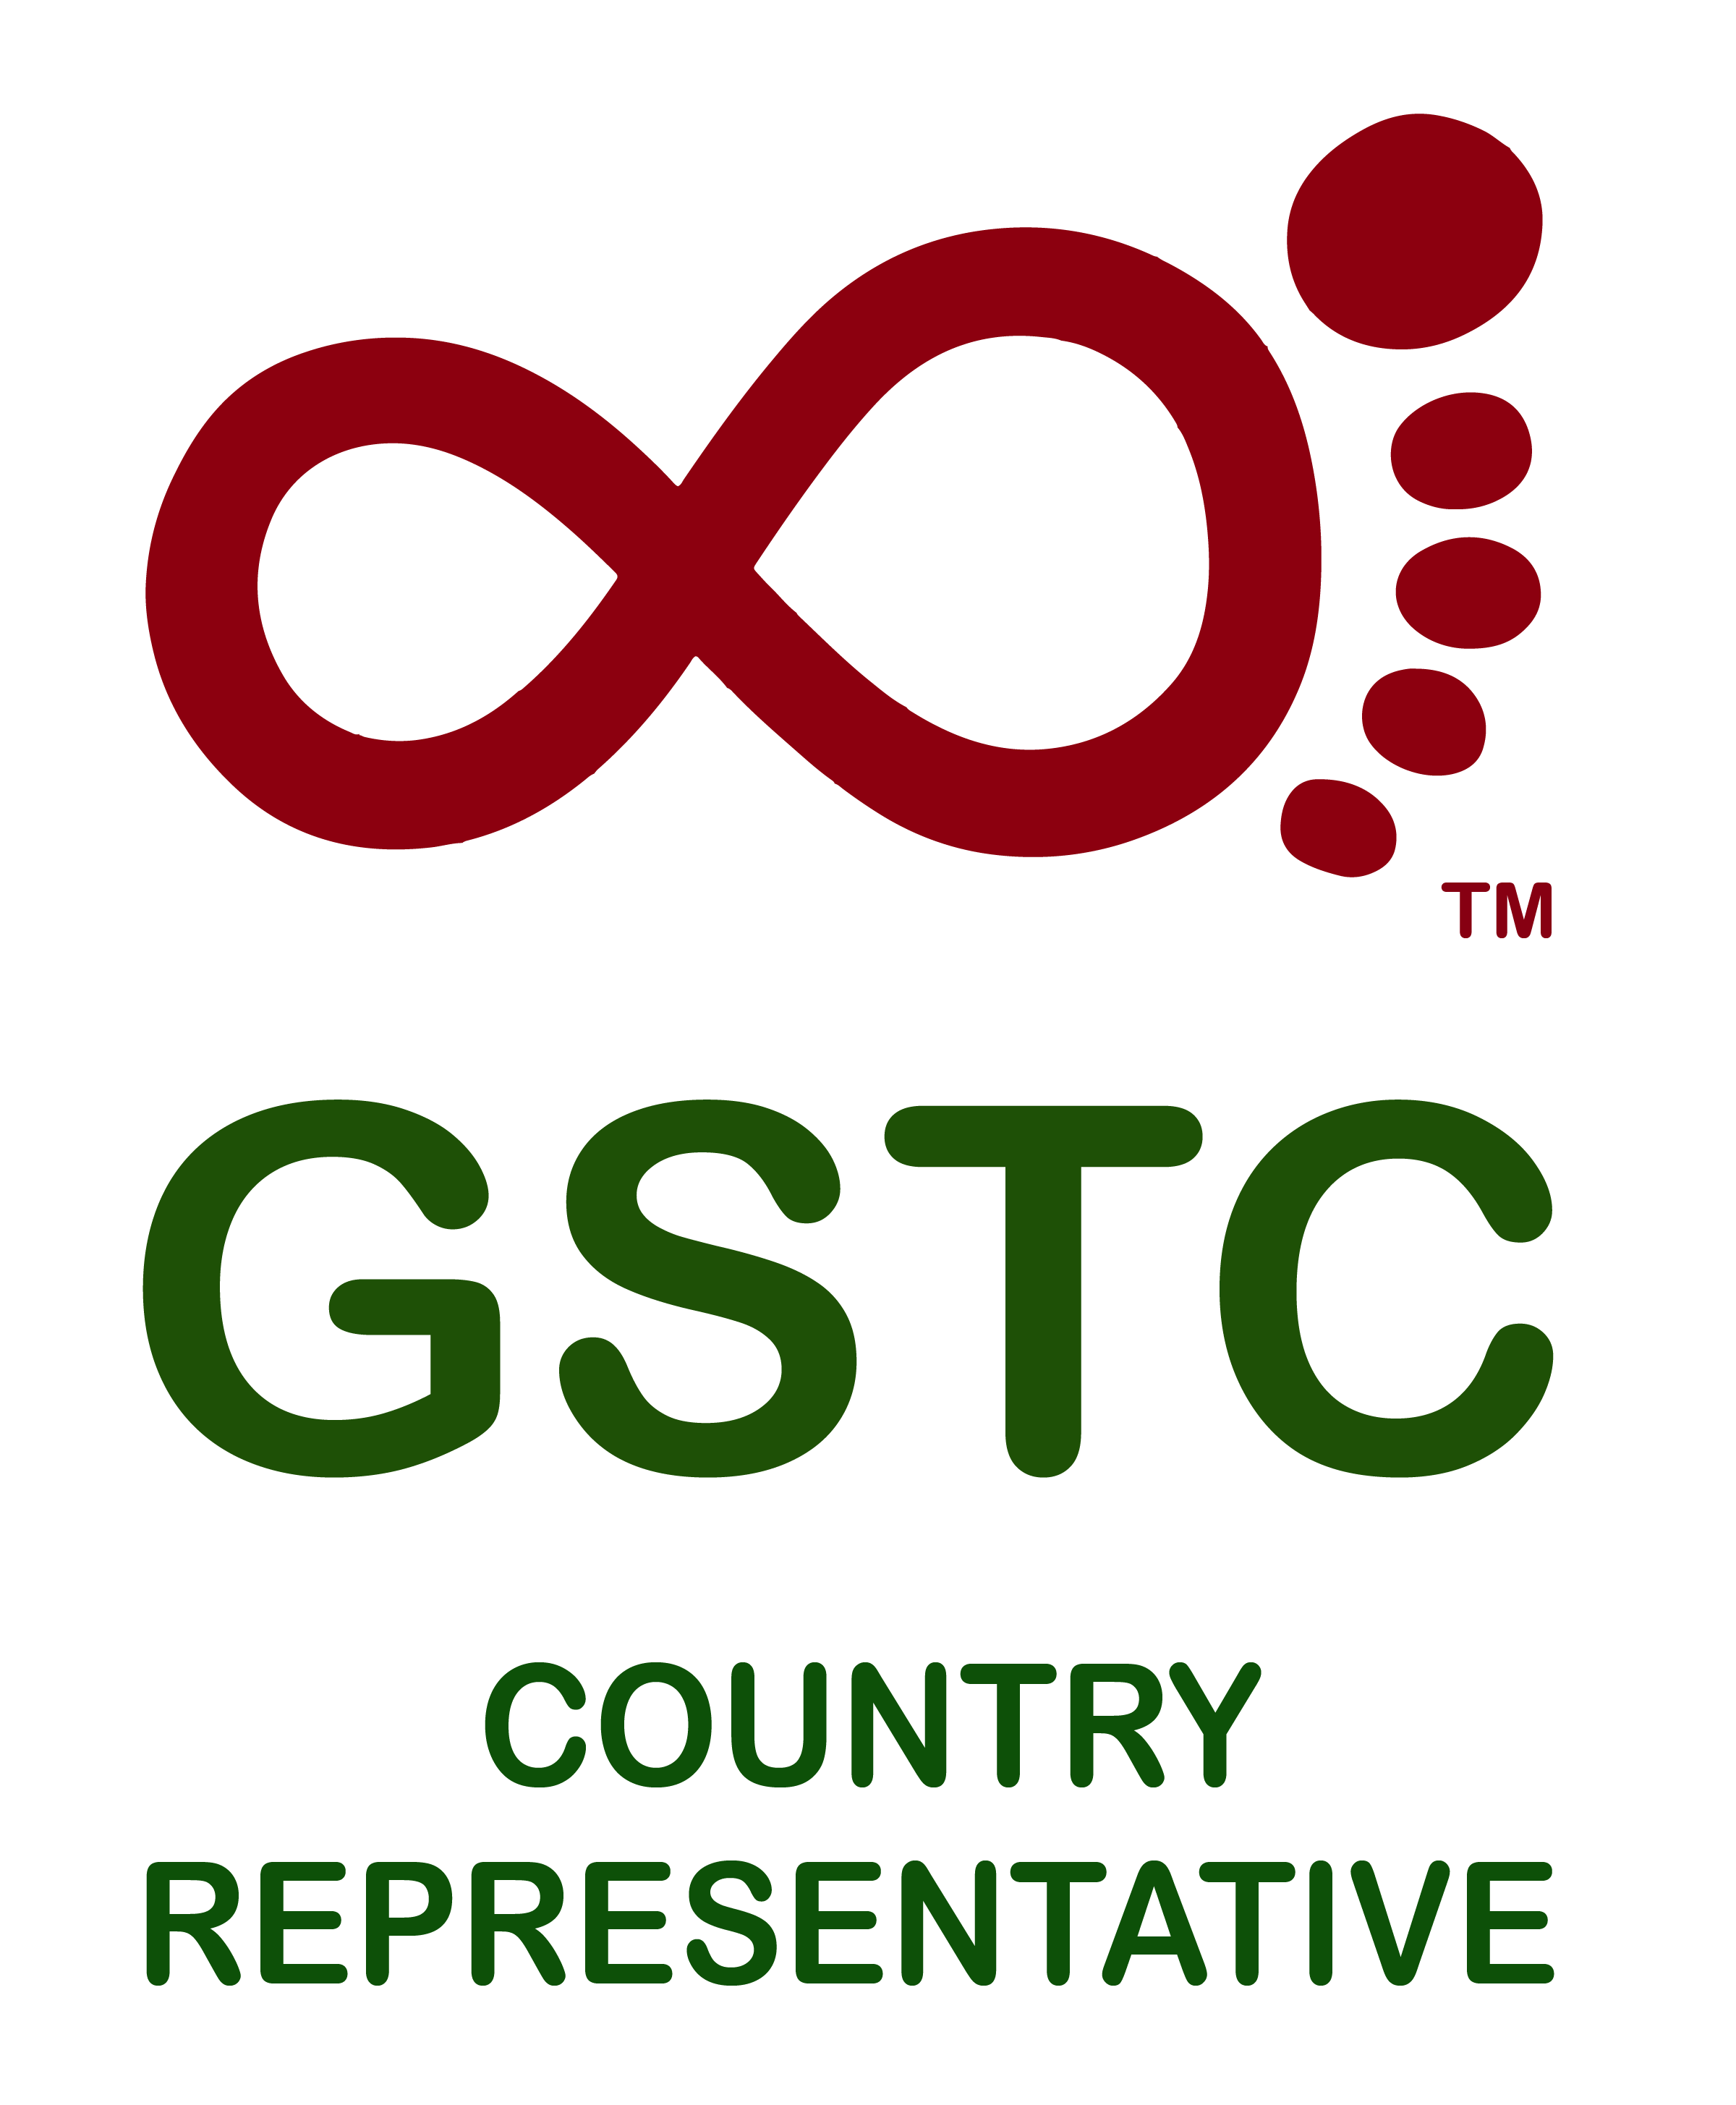 Representative Logo - GSTC Logo Country Representative - Fair Travel - Responsible Tourism ...